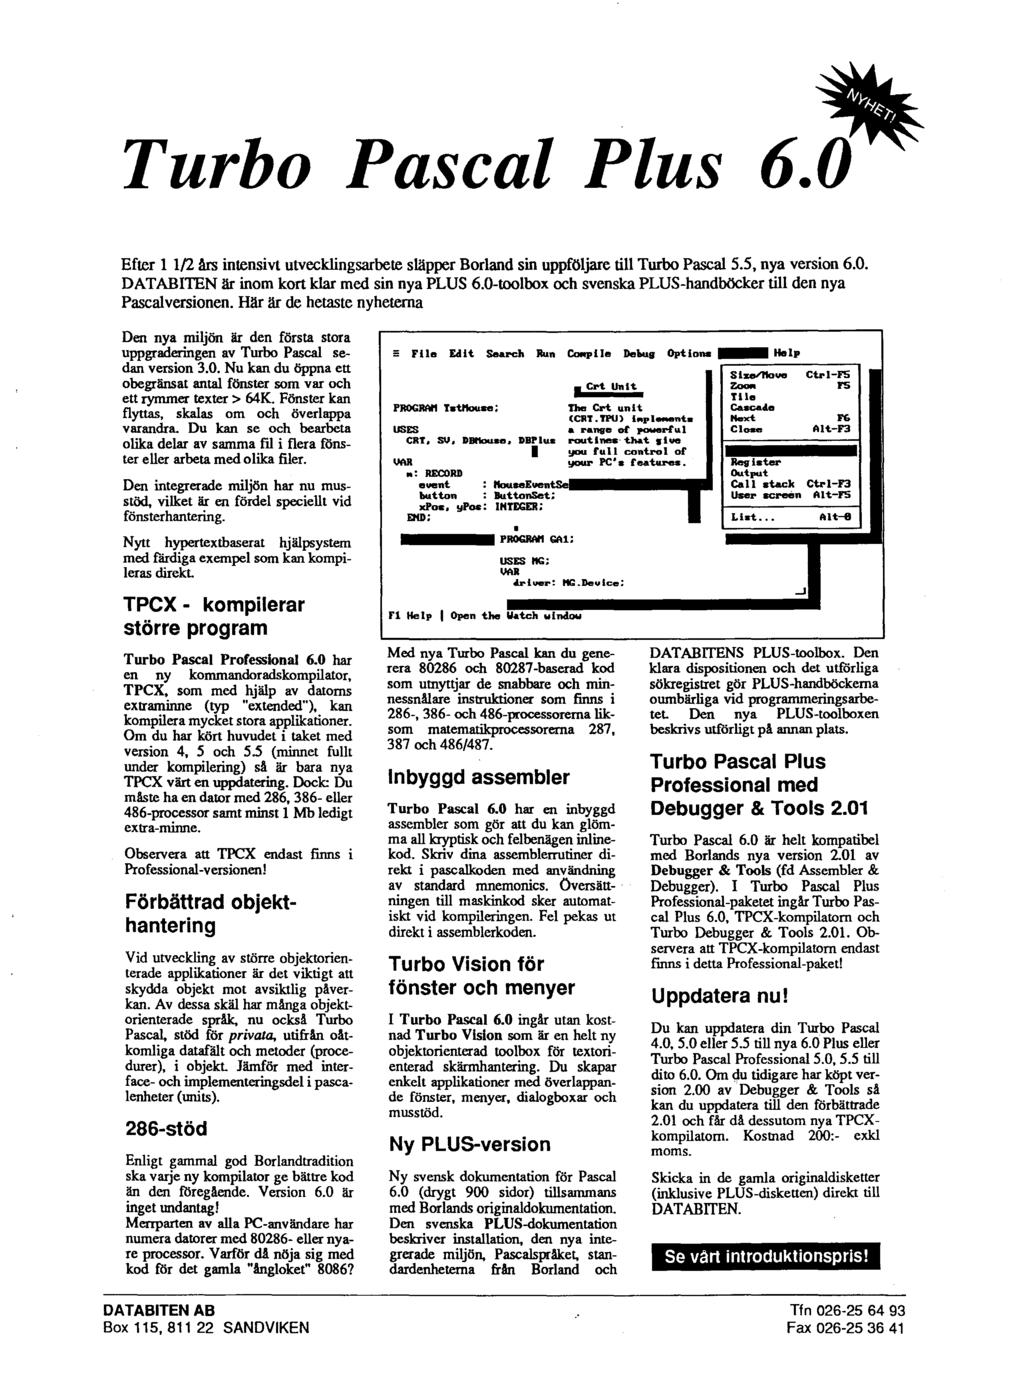 * Turbo Pascal Plus 6.0 Efter 1 112 h intensivt utvecklingsarbete supper Borland sin uppföljare till Turbo Pascal 5.5, nya version 6.0. DATABITEN är inom kort klar med sin nya PLUS 6.